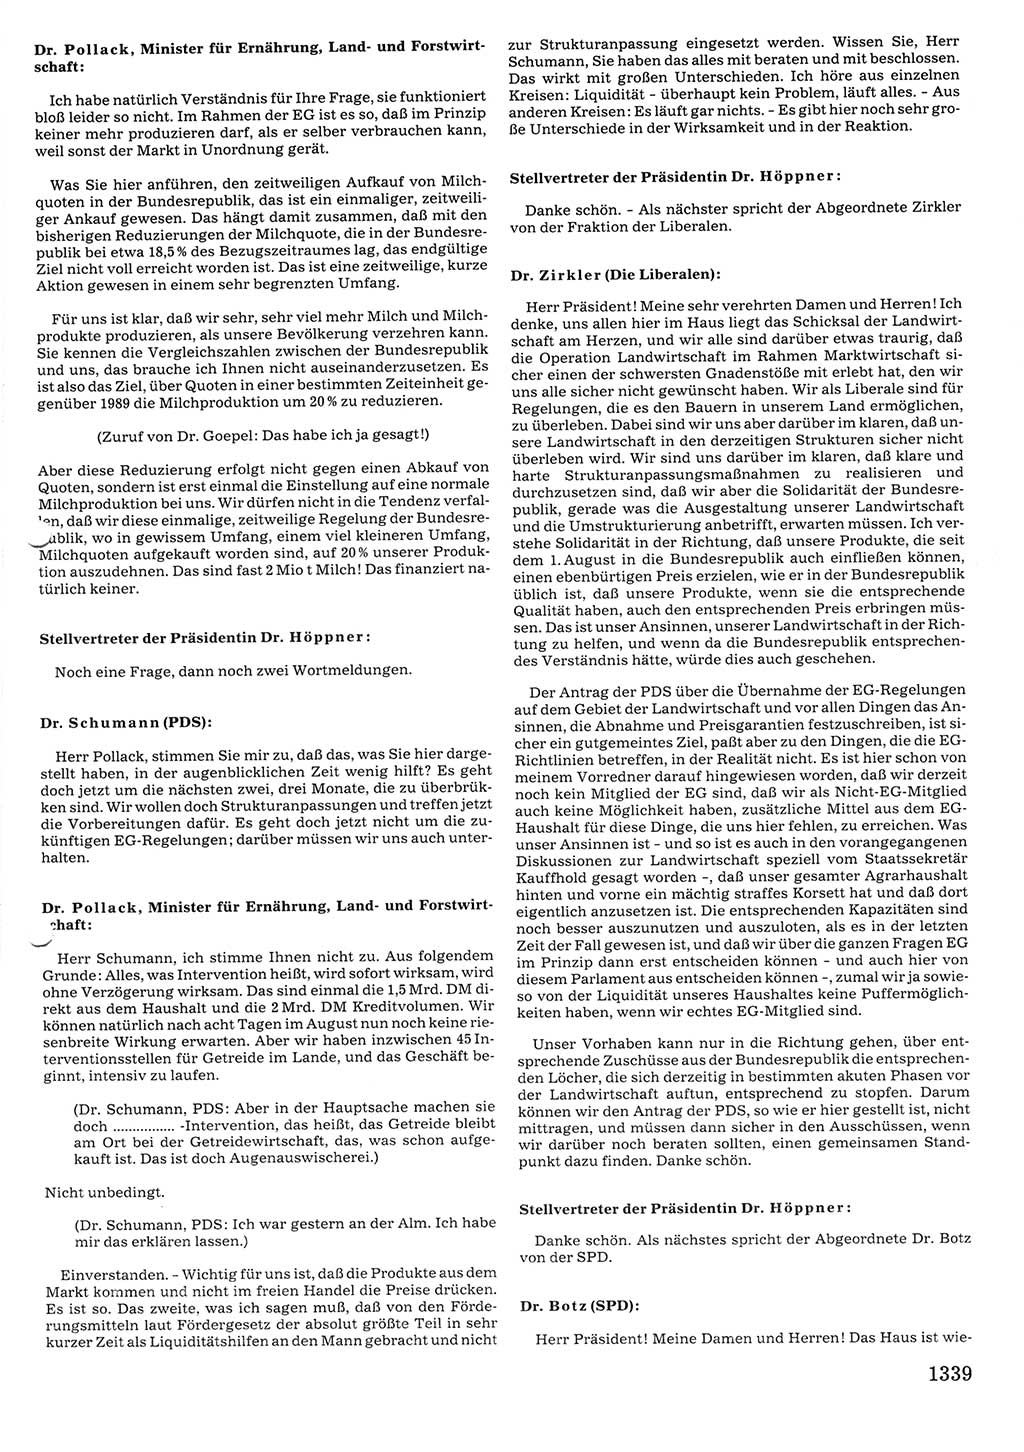 Tagungen der Volkskammer (VK) der Deutschen Demokratischen Republik (DDR), 10. Wahlperiode 1990, Seite 1339 (VK. DDR 10. WP. 1990, Prot. Tg. 1-38, 5.4.-2.10.1990, S. 1339)